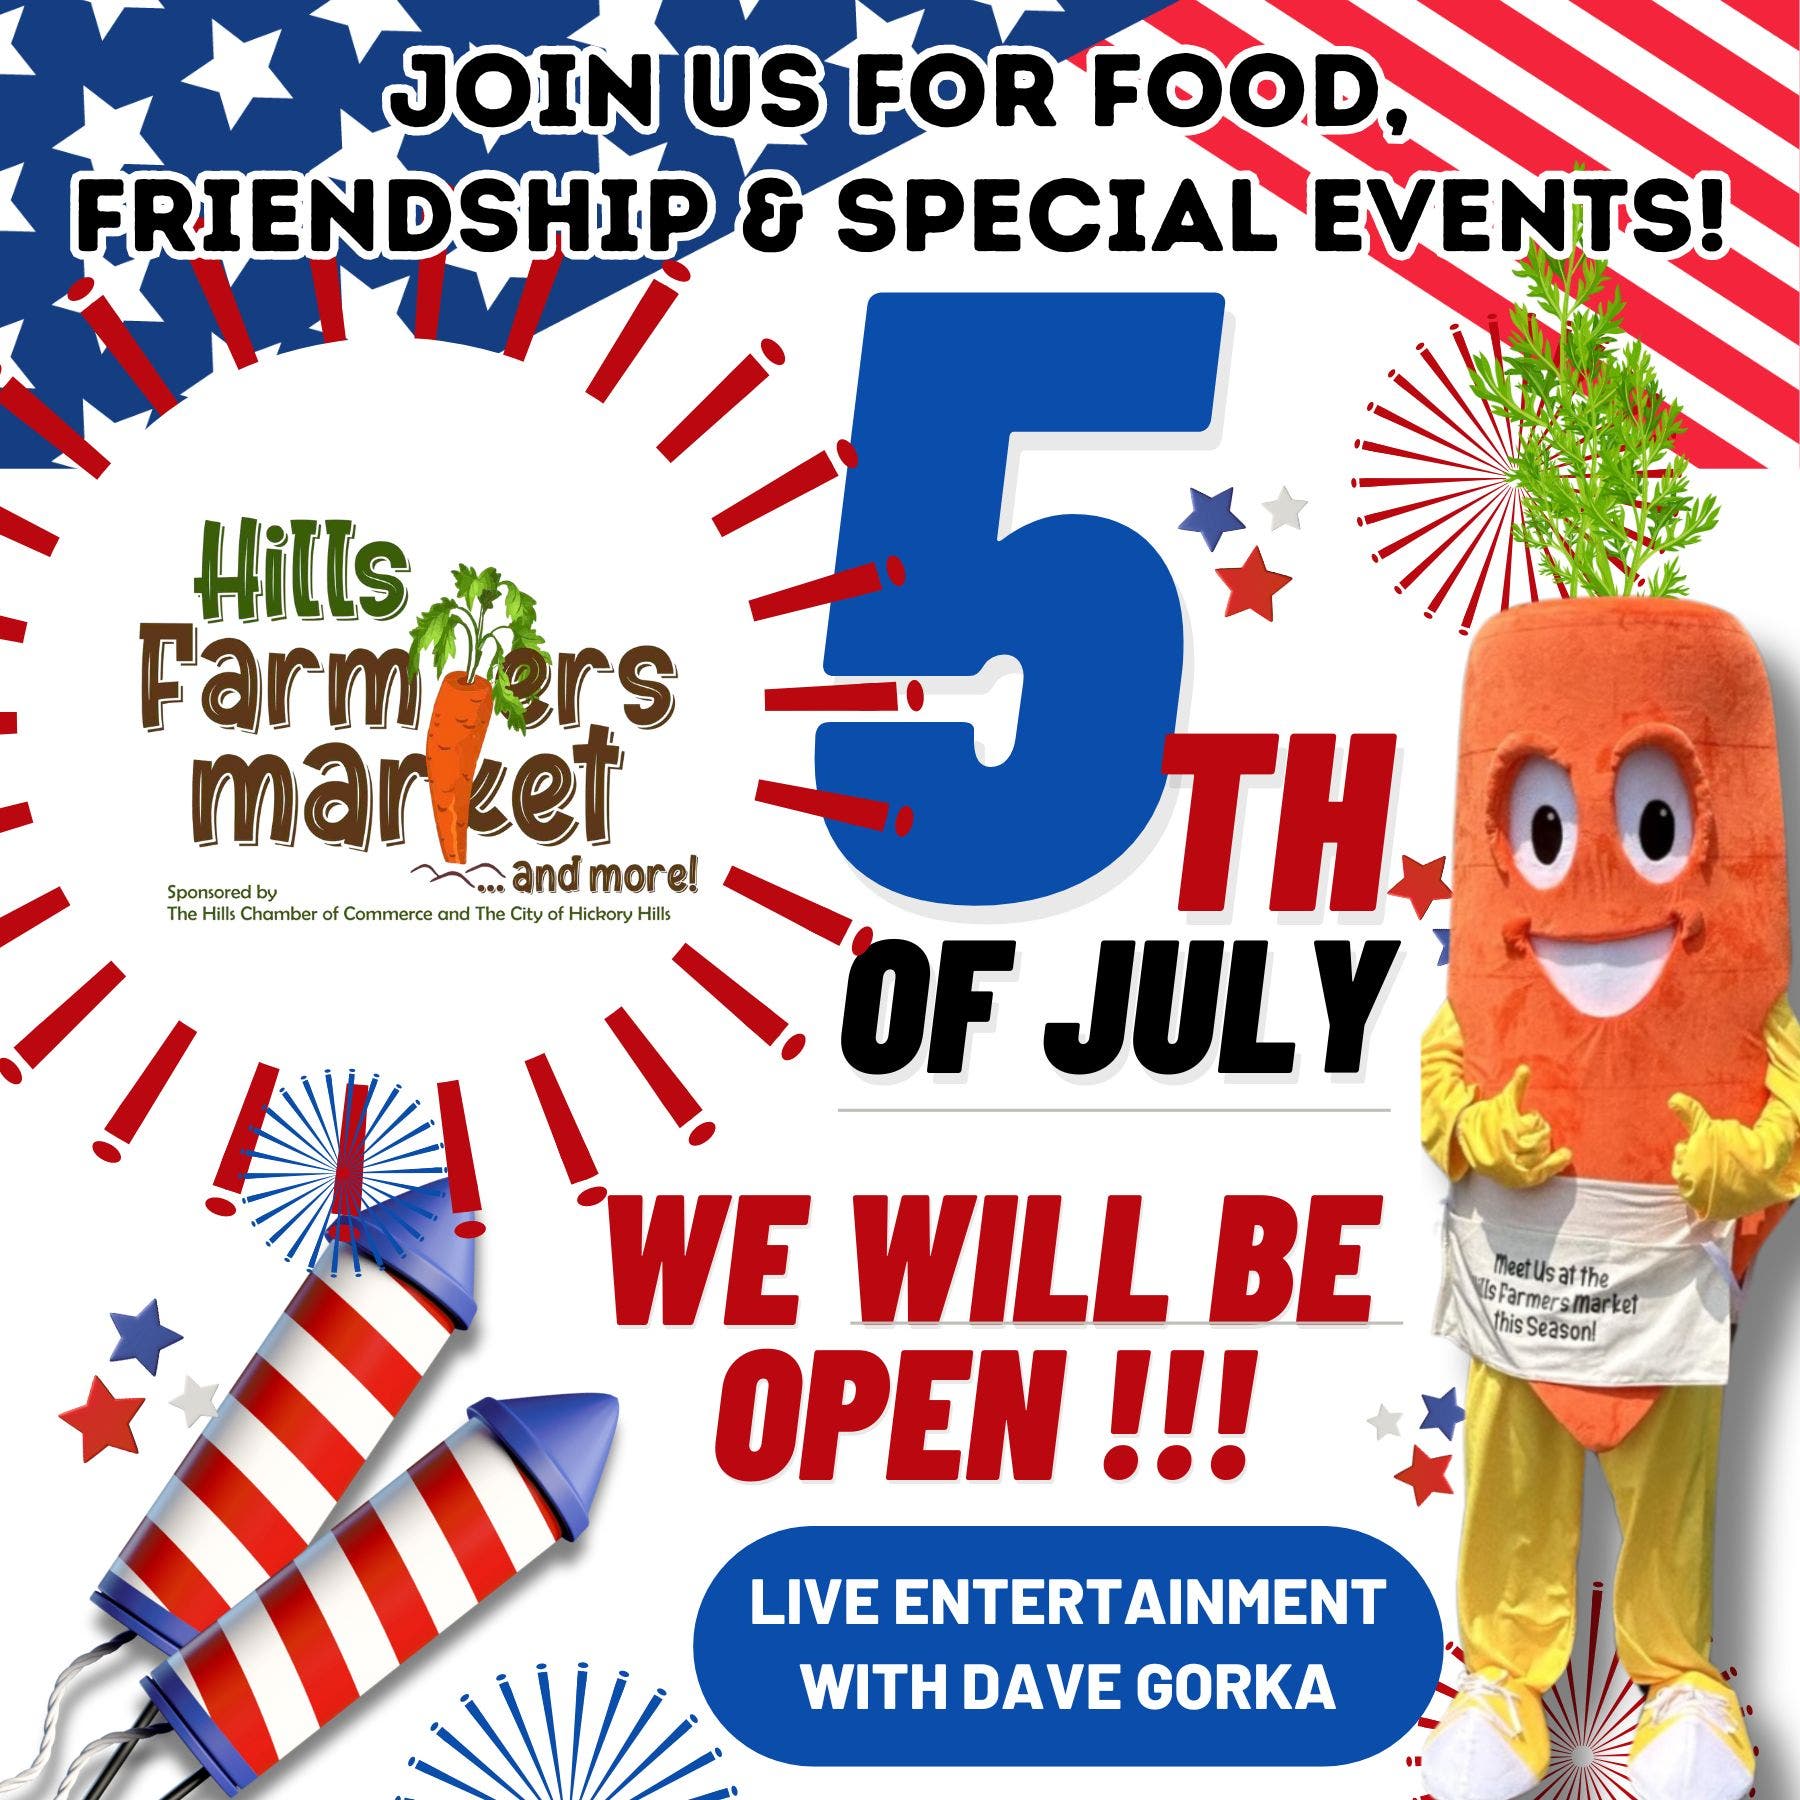 Hills Farmers Market is OPEN on July 5th !!!